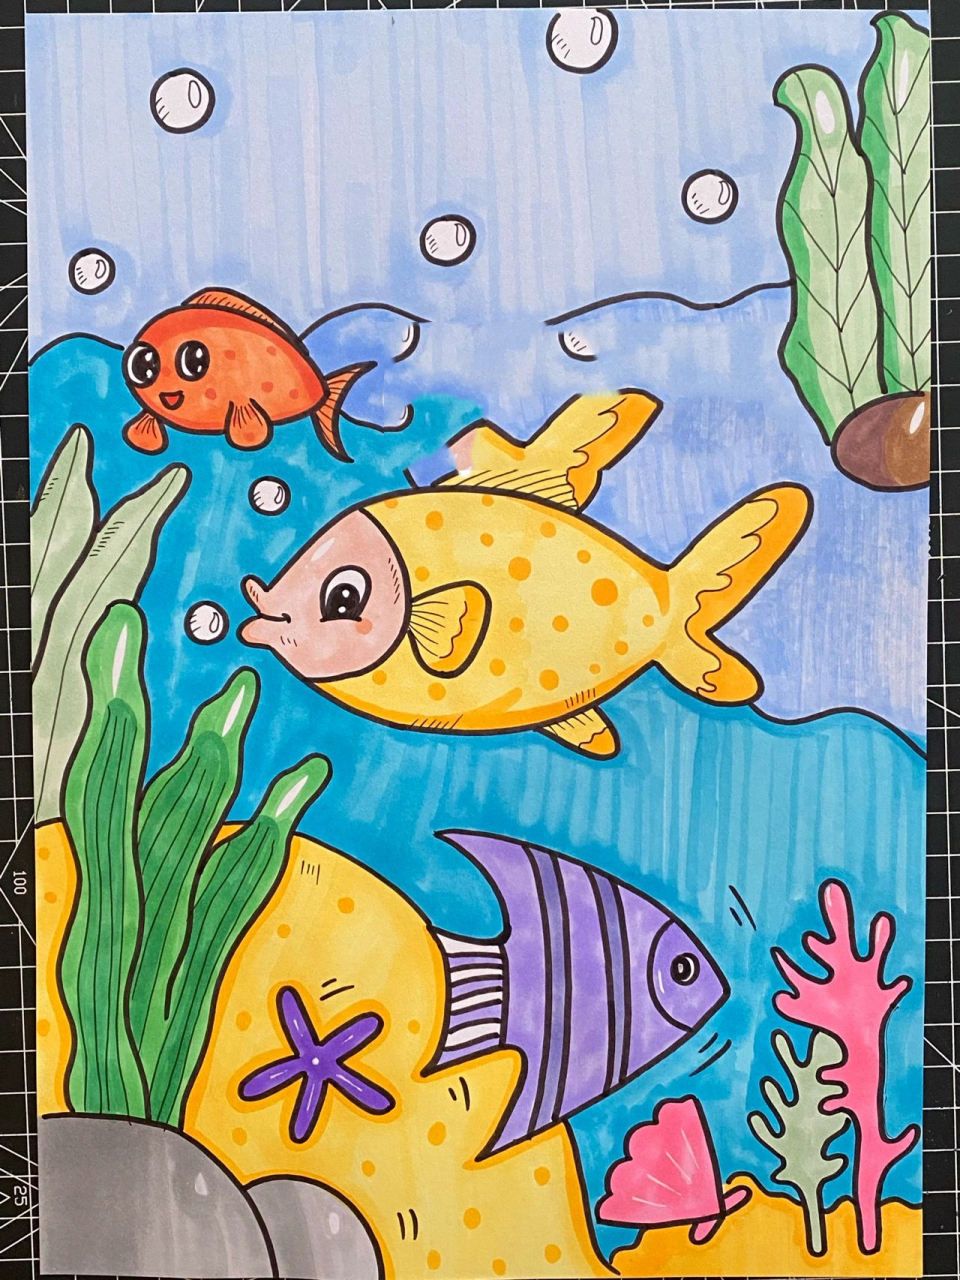 彩色简笔画海底鱼类图片